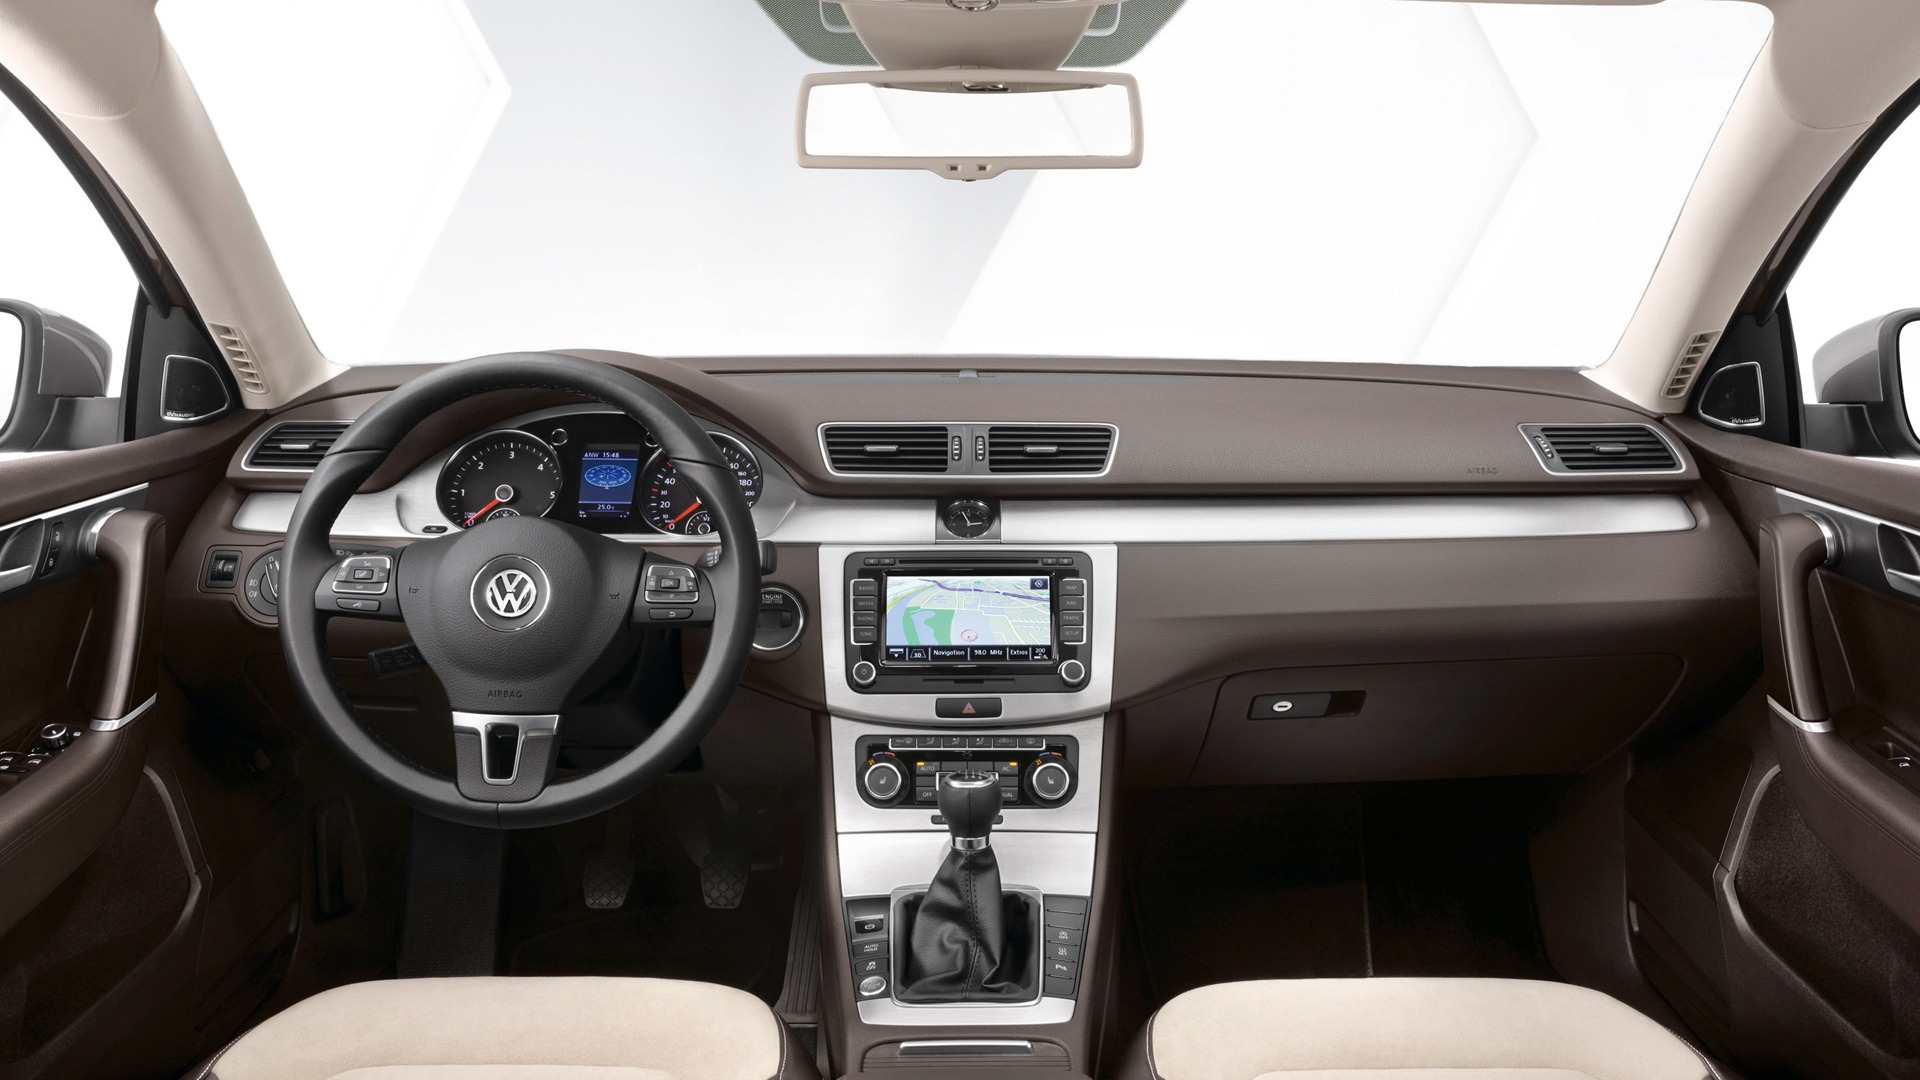 Volkswagen Passat - 2010 大众11 - 1920x1080